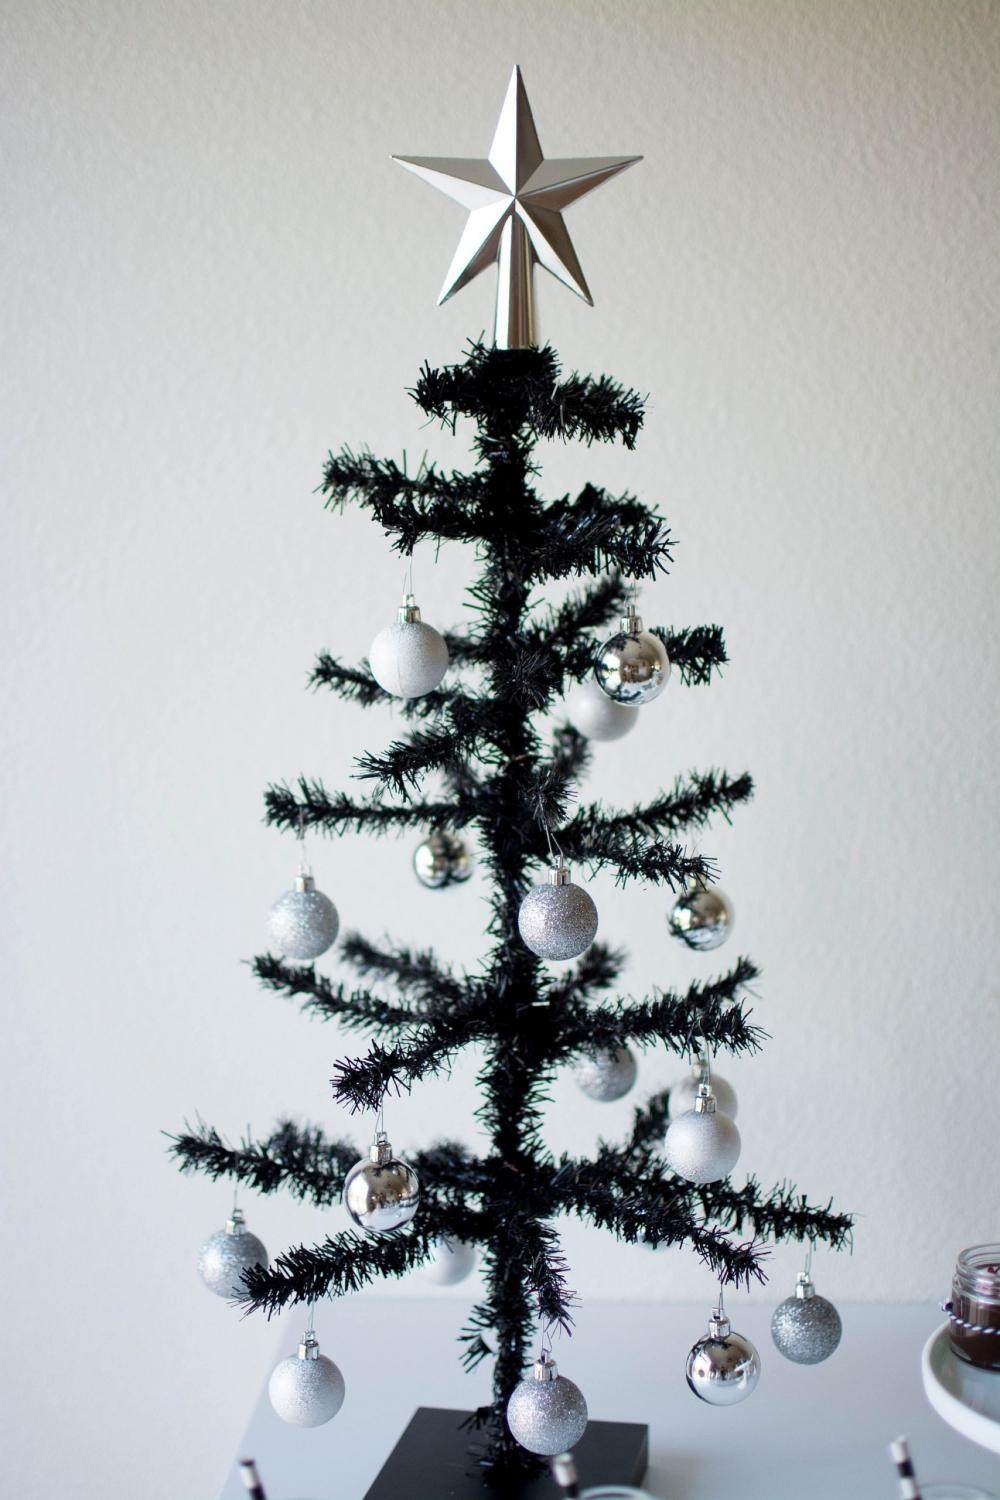 Τα μαύρα Χριστουγεννιάτικα δέντρα κλέβουν την παράσταση